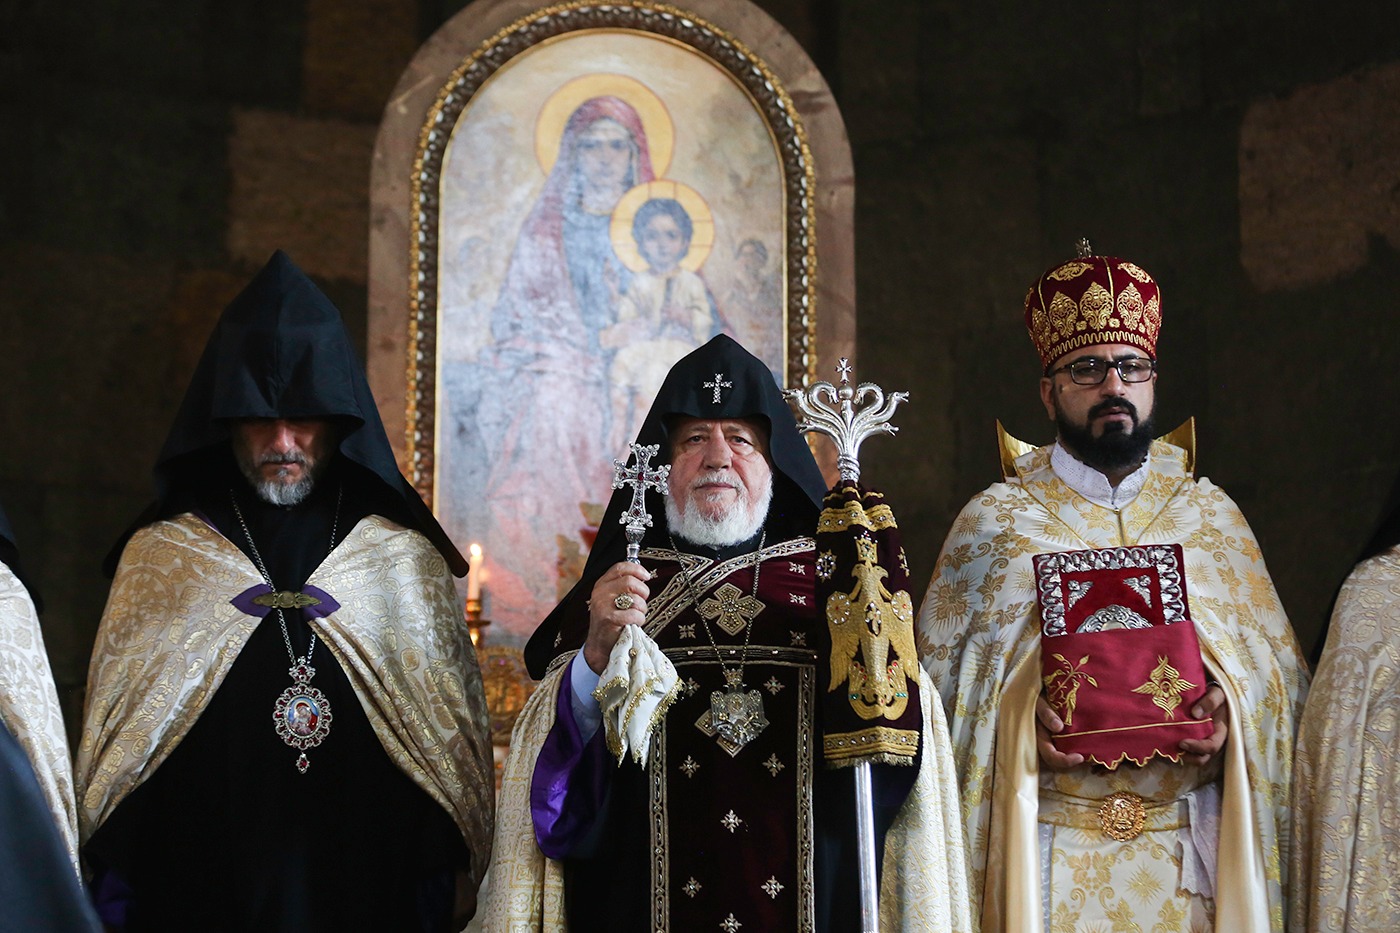 Szeptember 3-án Őszentsége, II. Garegin Minden  Örmények Katolikosz- Pátriárkája elnökletével a Szent Gayane-templomban a papság és a vallásos emberek egységes imát emeltek Istenhez Artsakh népének békés és biztonságos életéért.